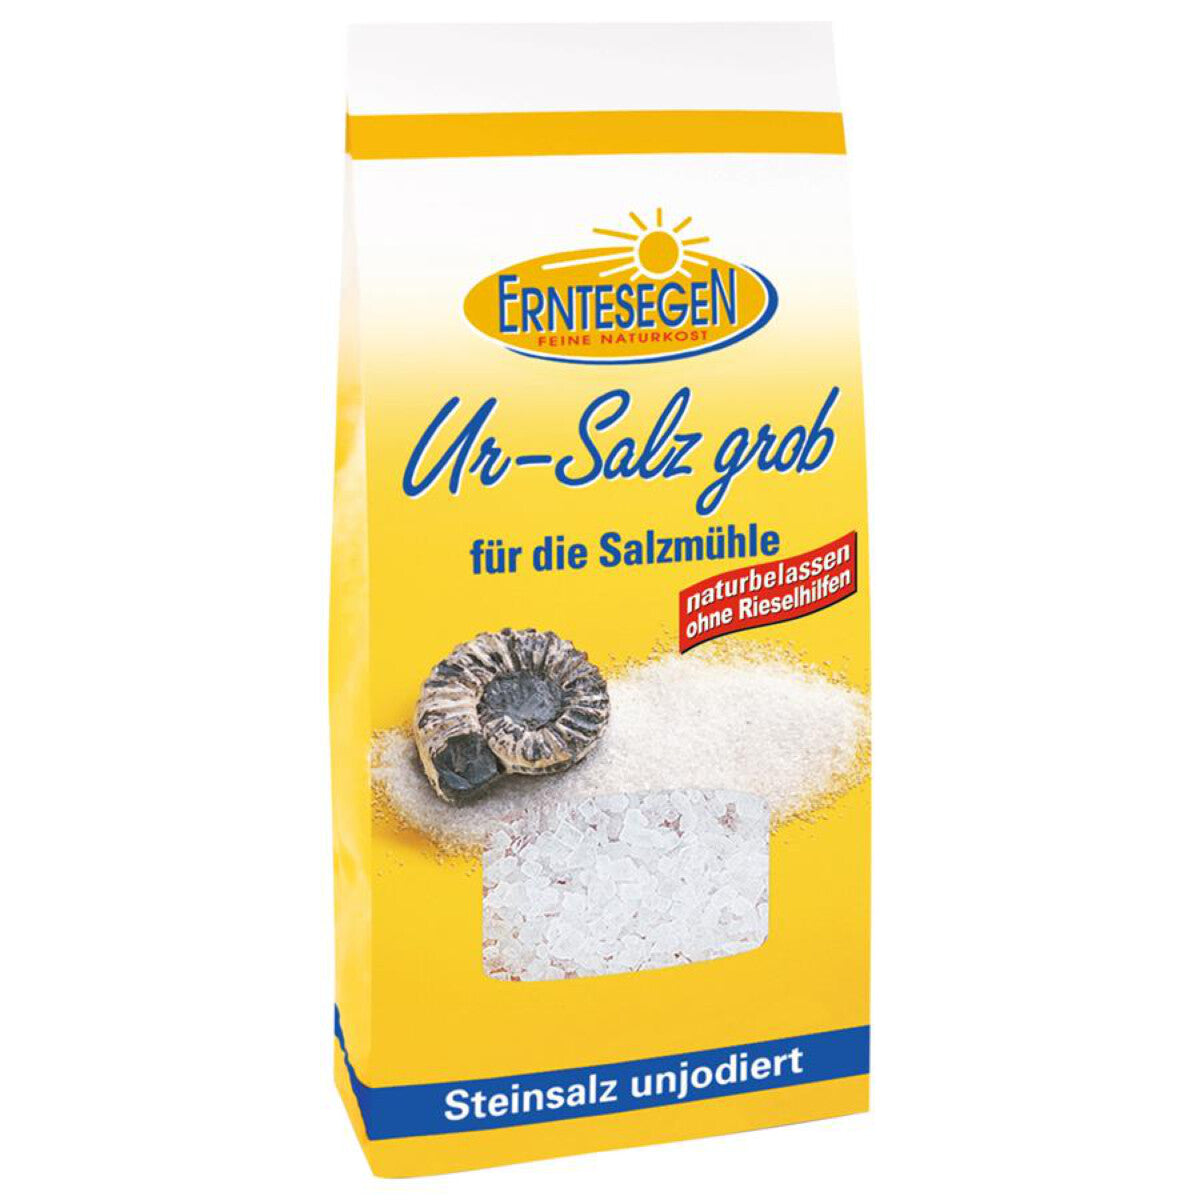 ERNTESEGEN Ur-Salz grob (Salzmühle) - 300 g